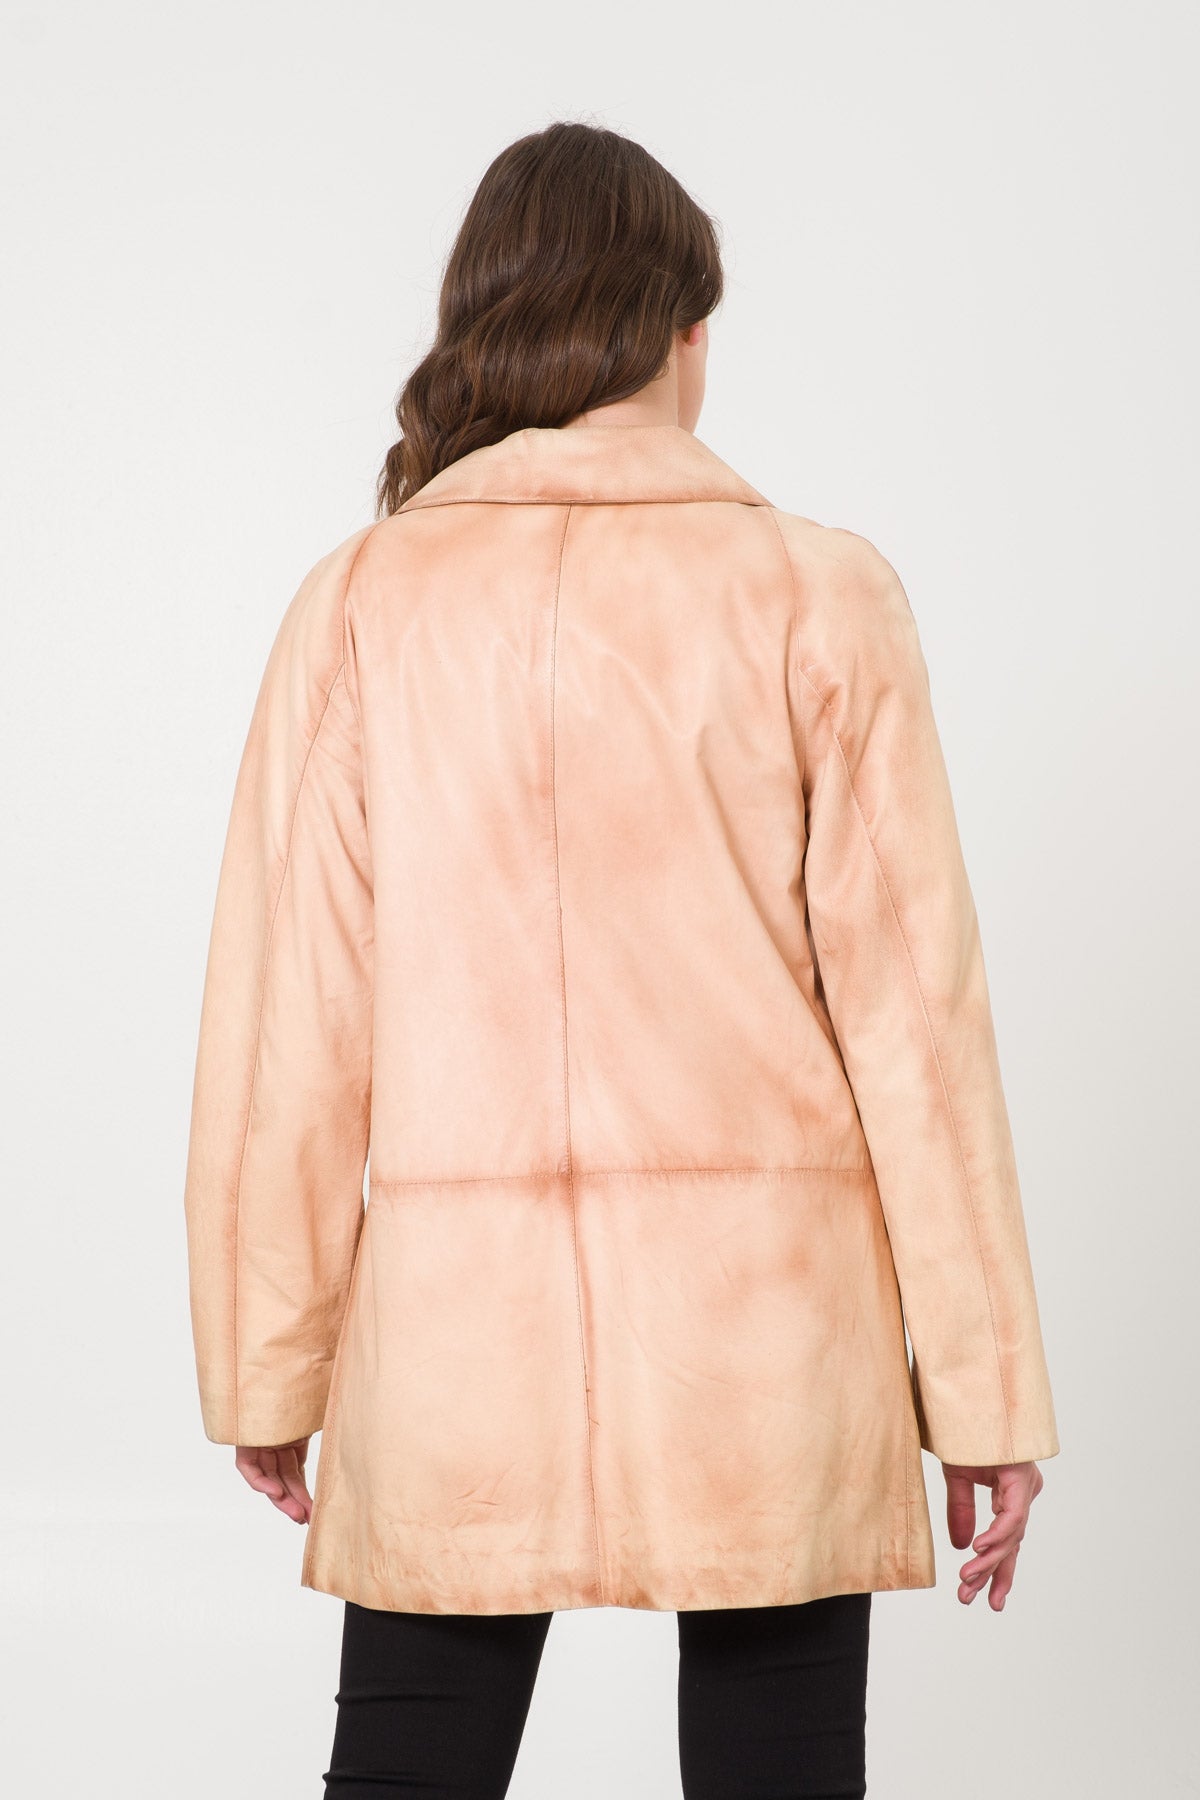 Cream Leather Coat